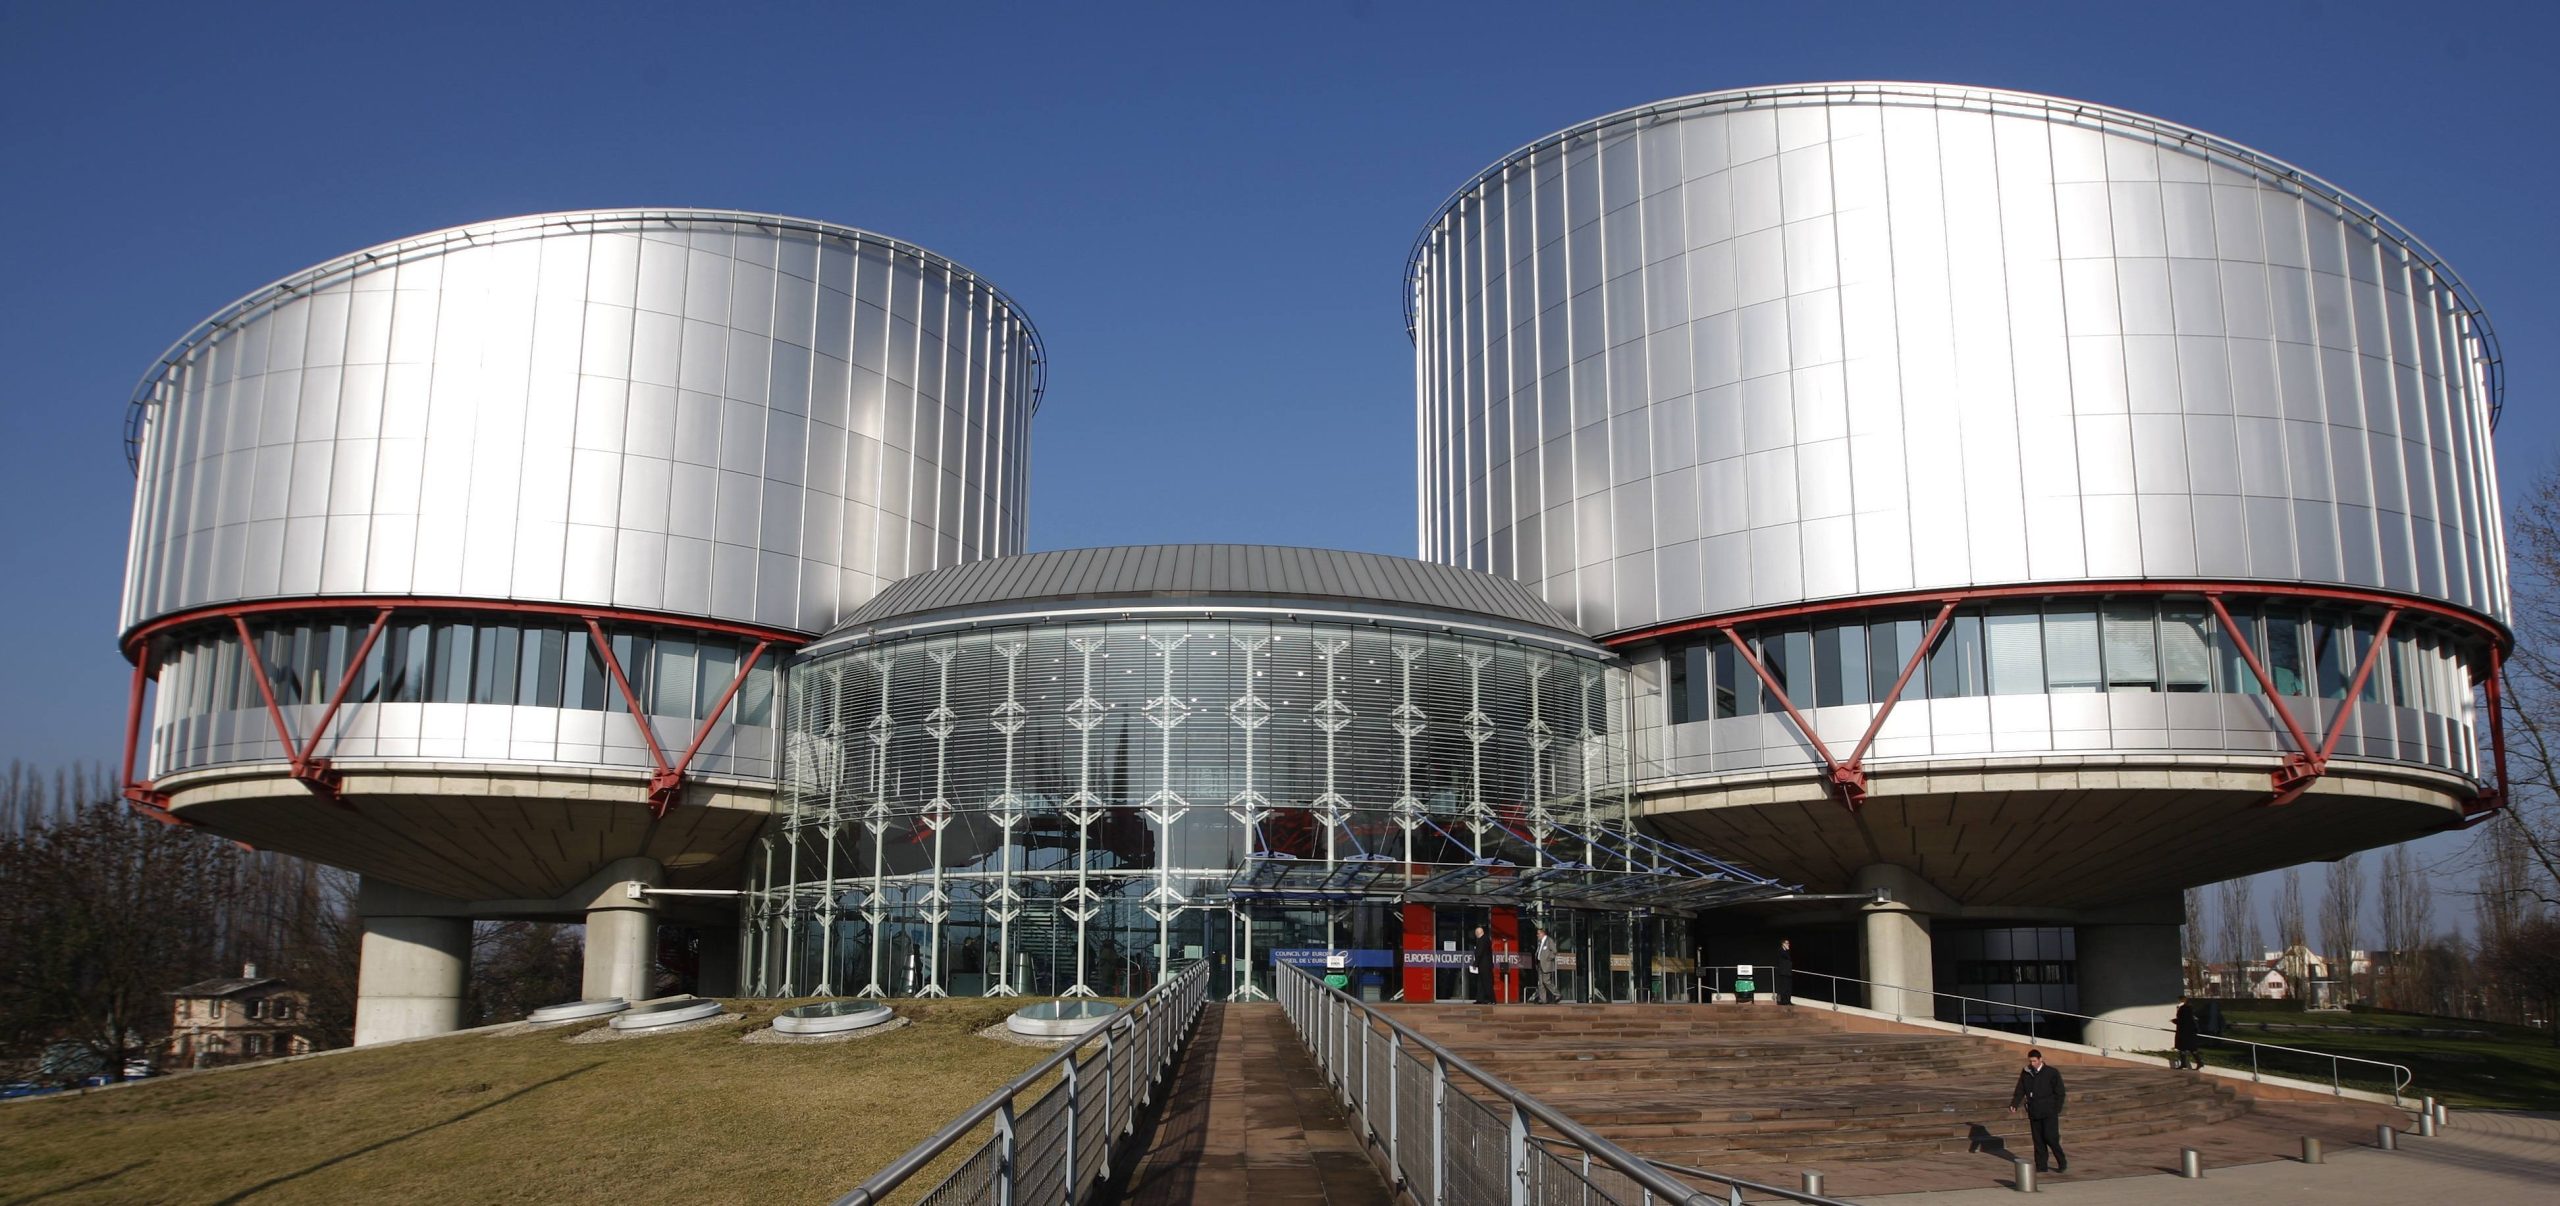 Προσφυγή της Ουκρανίας κατά της Ρωσίας στο Ευρωπαϊκό Δικαστήριο Ανθρώπινων Δικαιωμάτων